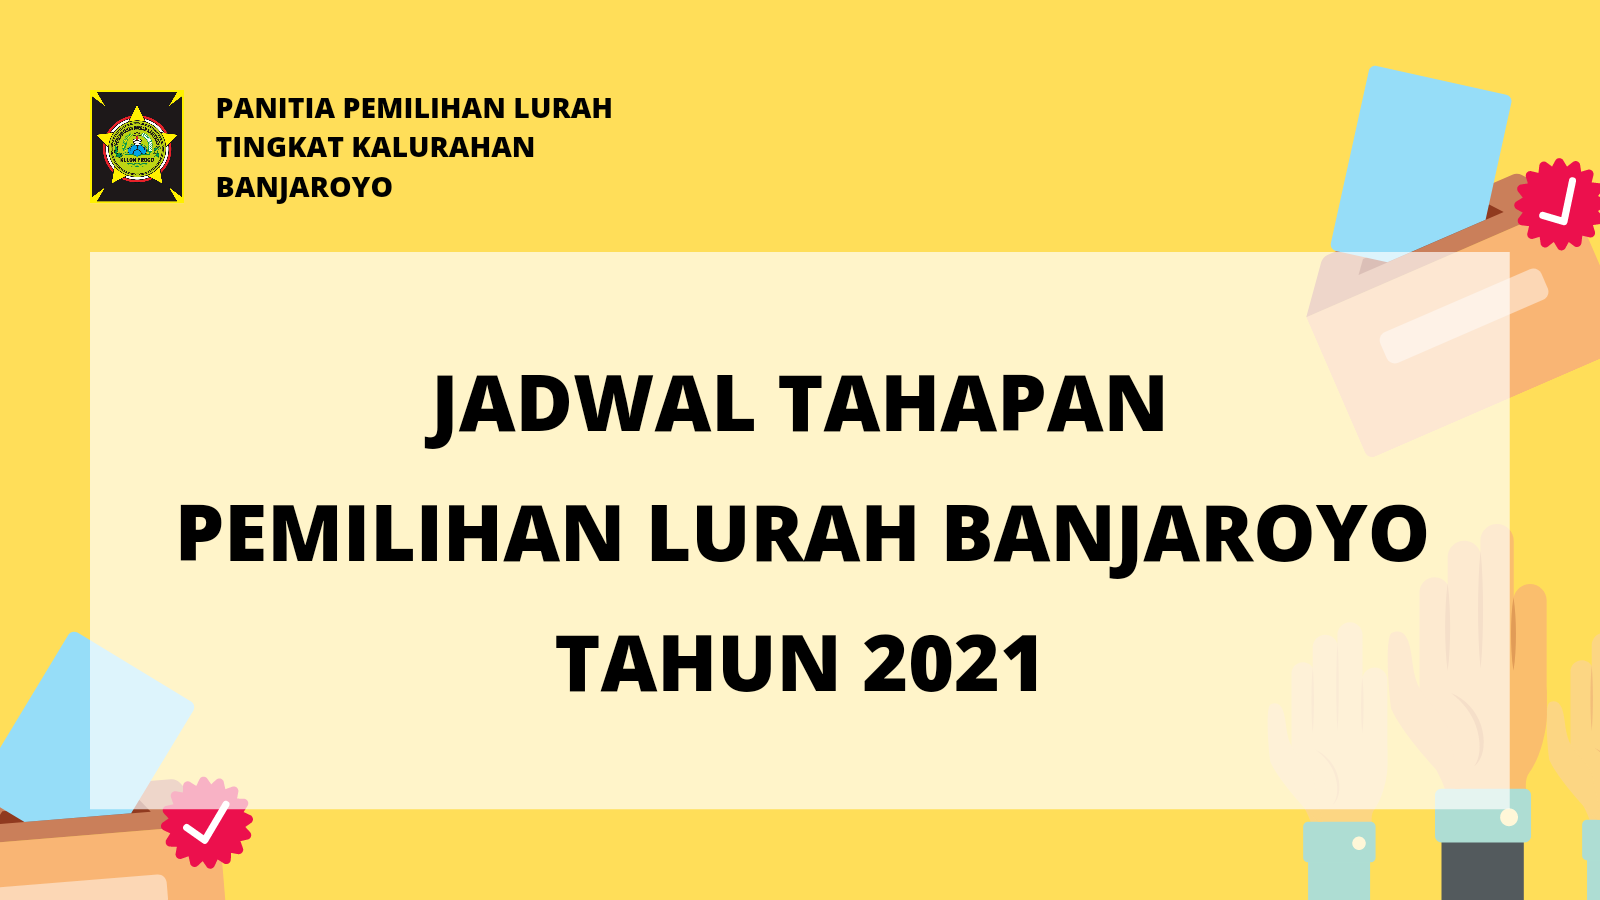 JADWAL TAHAPAN PEMILIHAN LURAH BANJAROYO TAHUN 2021